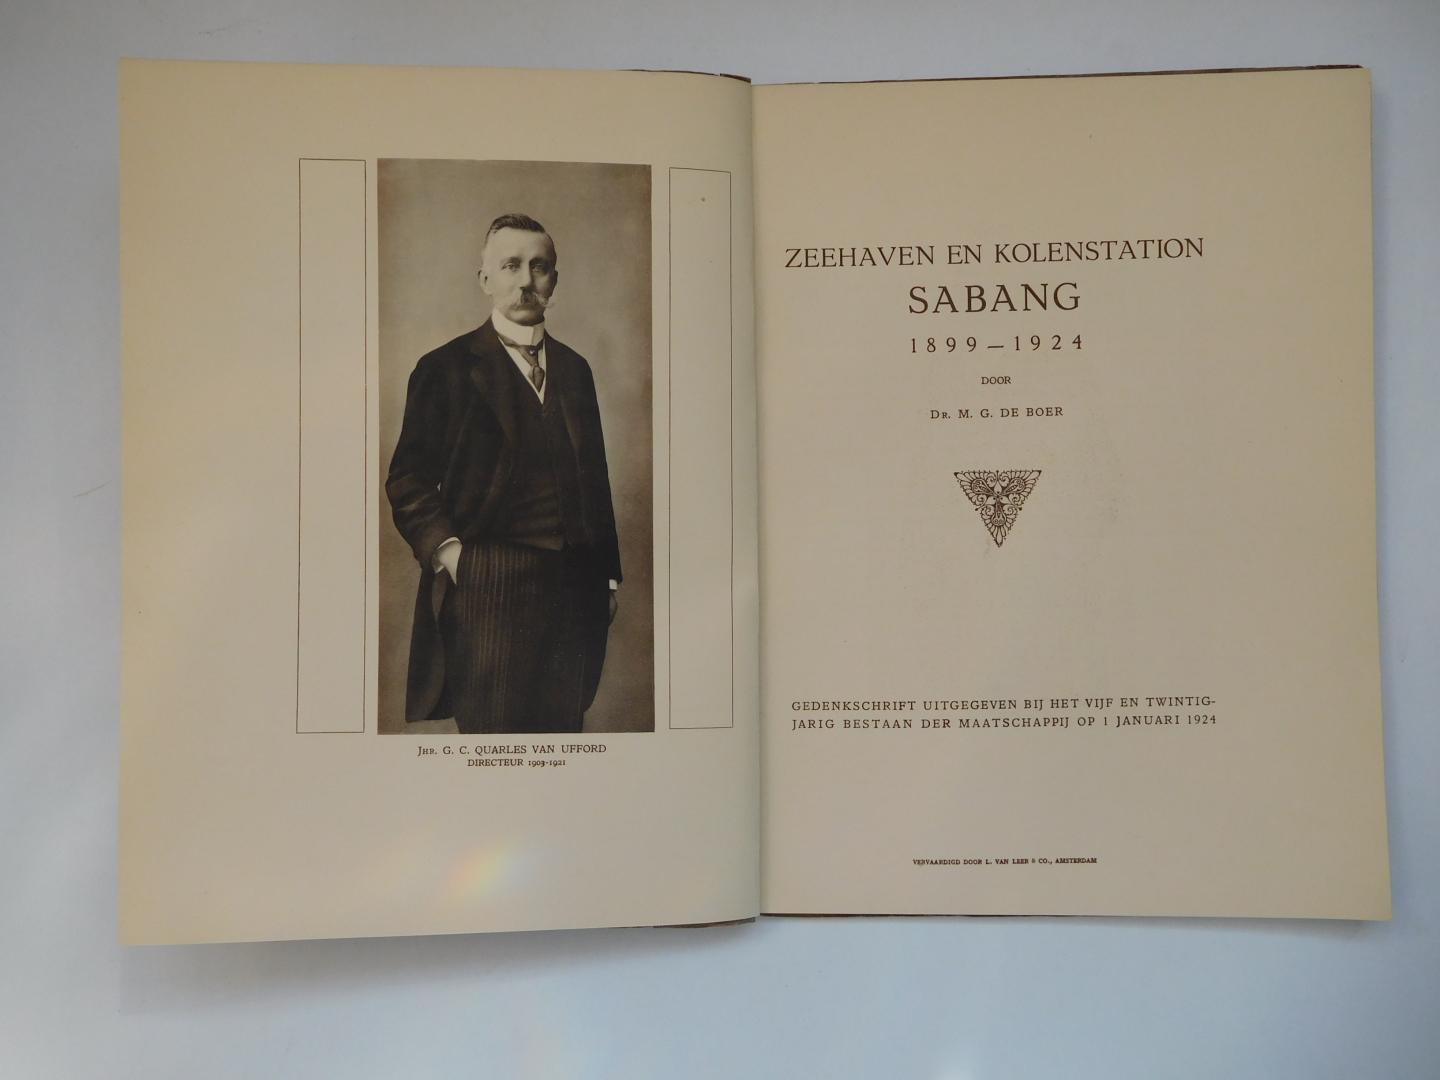 Boer, M. G. de - Zeehaven en kolenstation Sabang 1899-1924